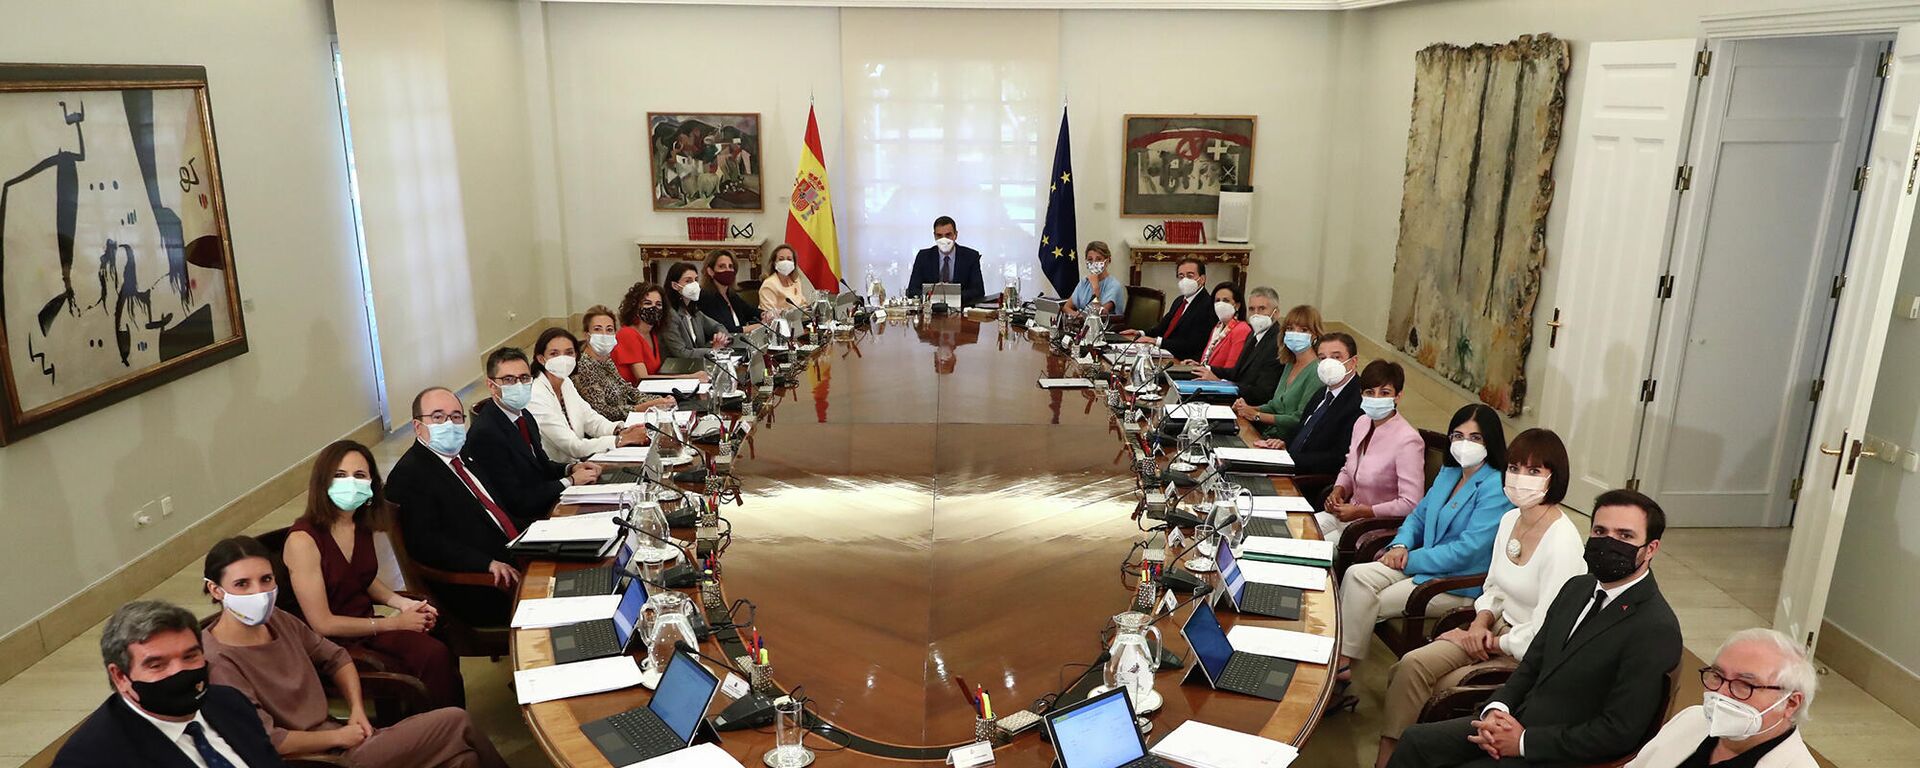 Reunión del Consejo de Ministros de España del 13 de julio de 2021 - Sputnik Mundo, 1920, 05.10.2021